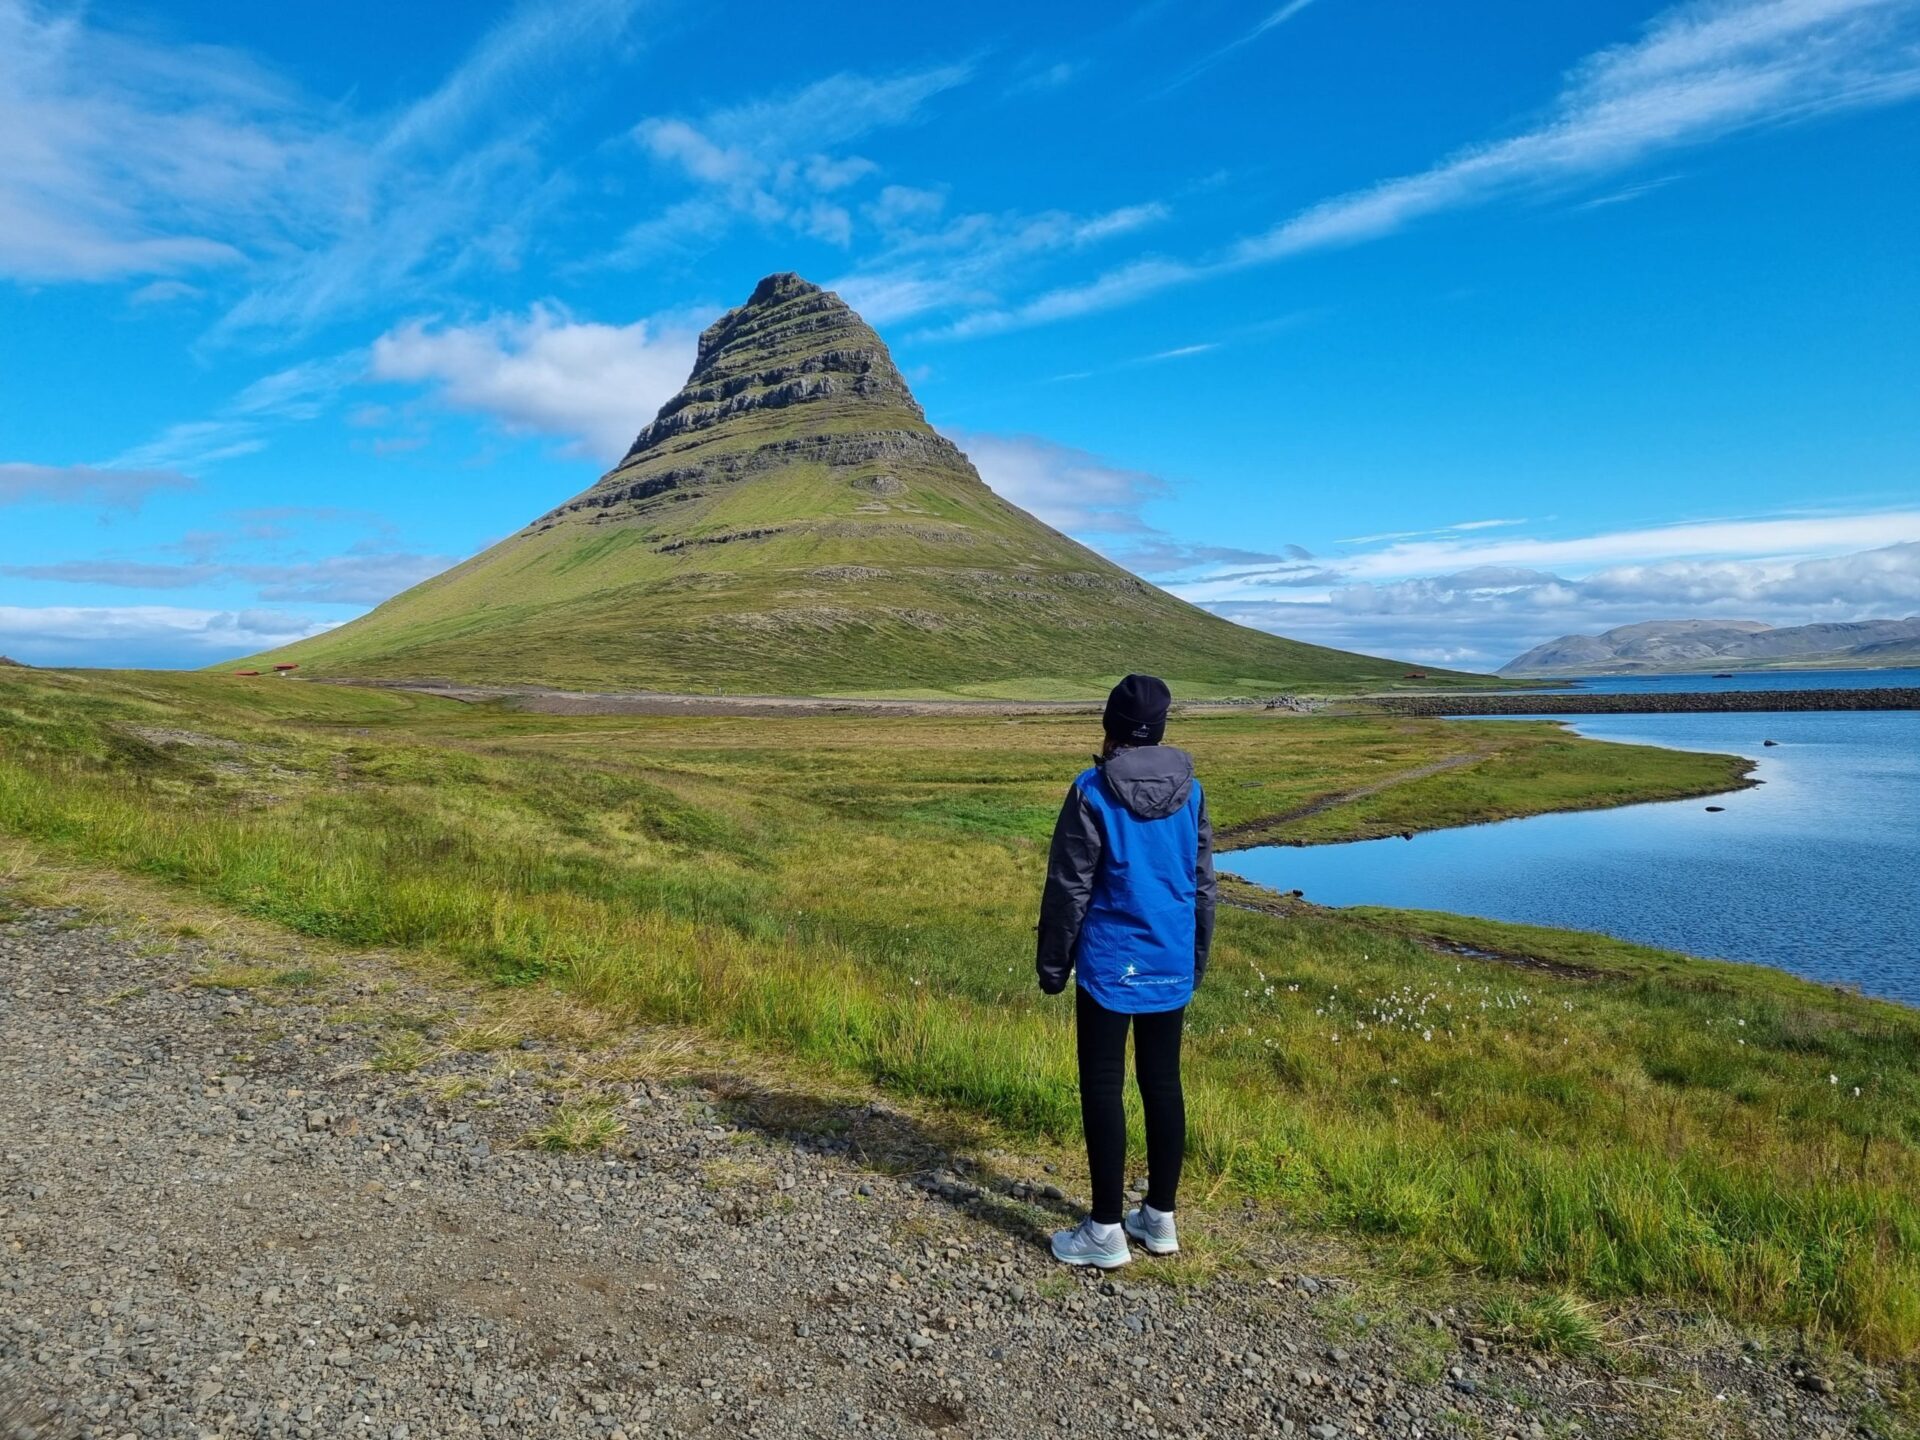 Mount Kirkjufell, Iceland; Oksana Prokopenko